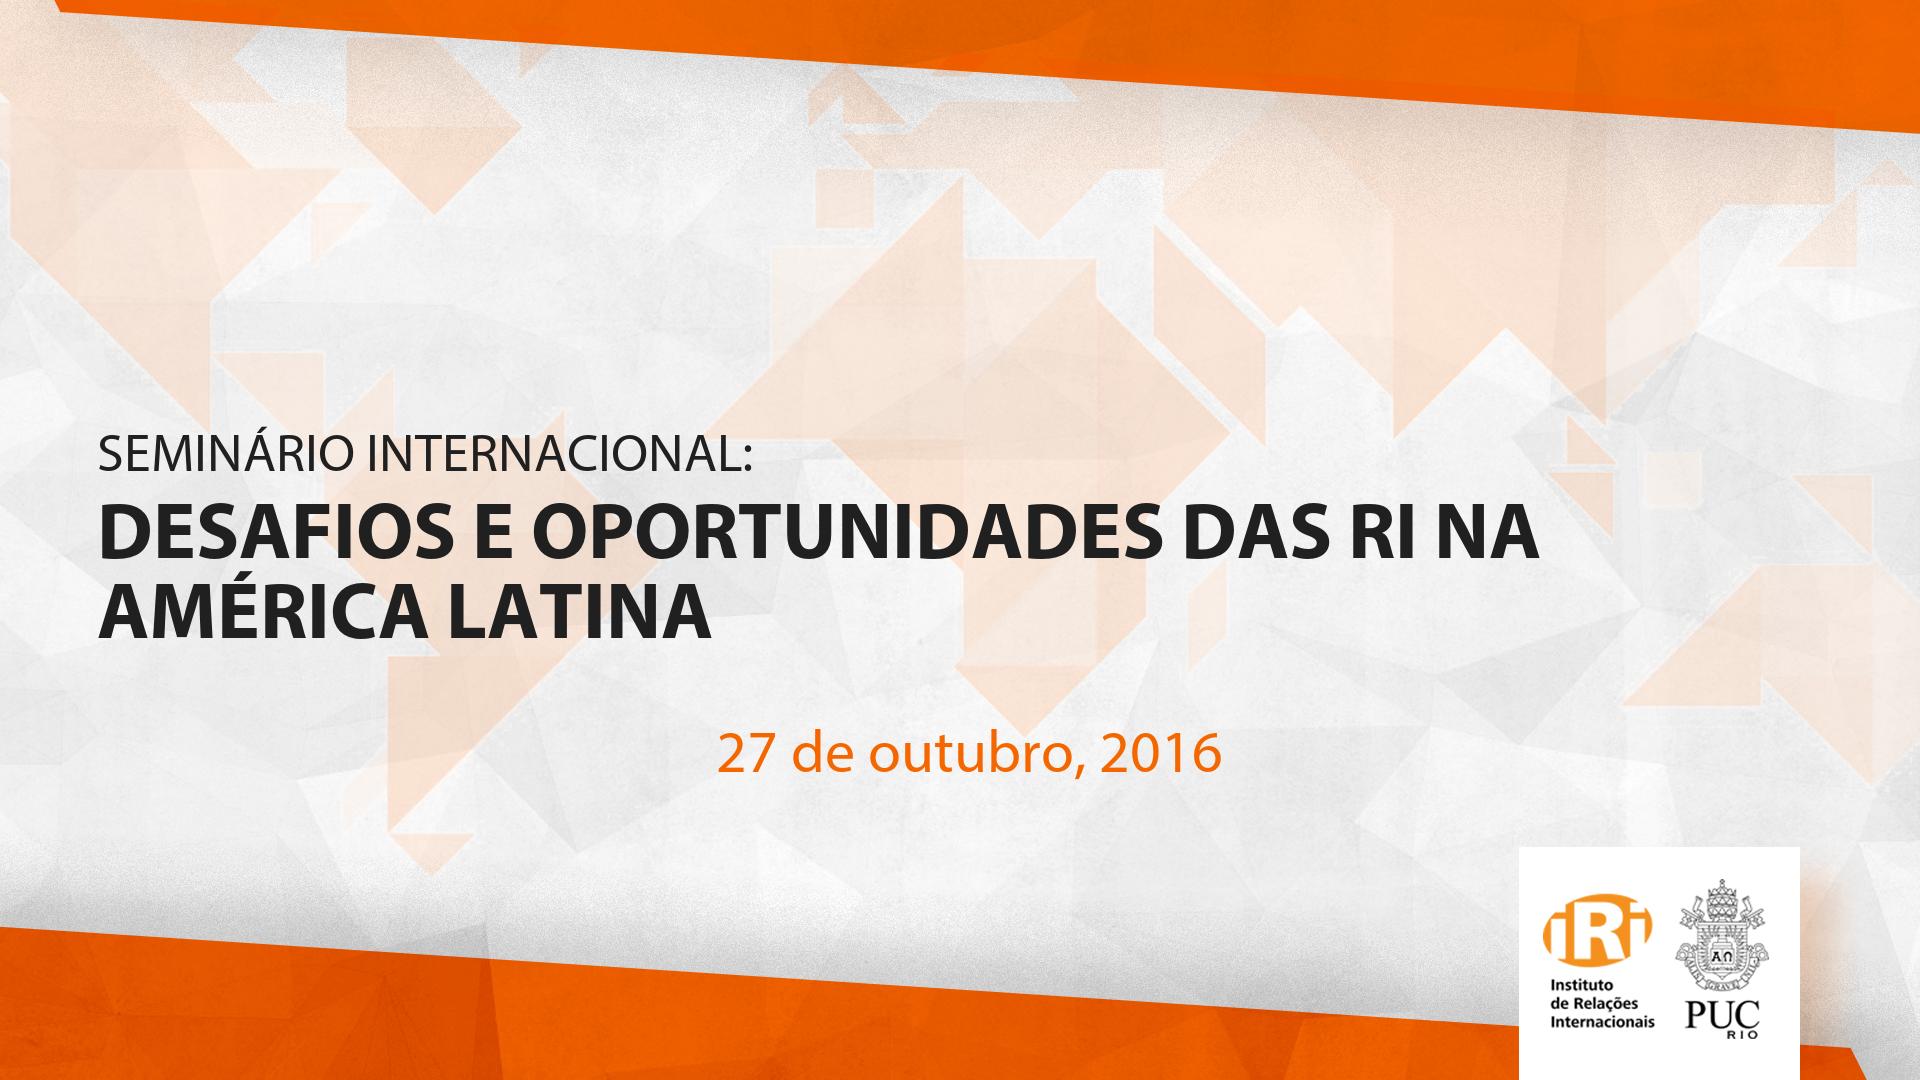 Desafios e Oportunidades das Relações Internacionais na América Latina